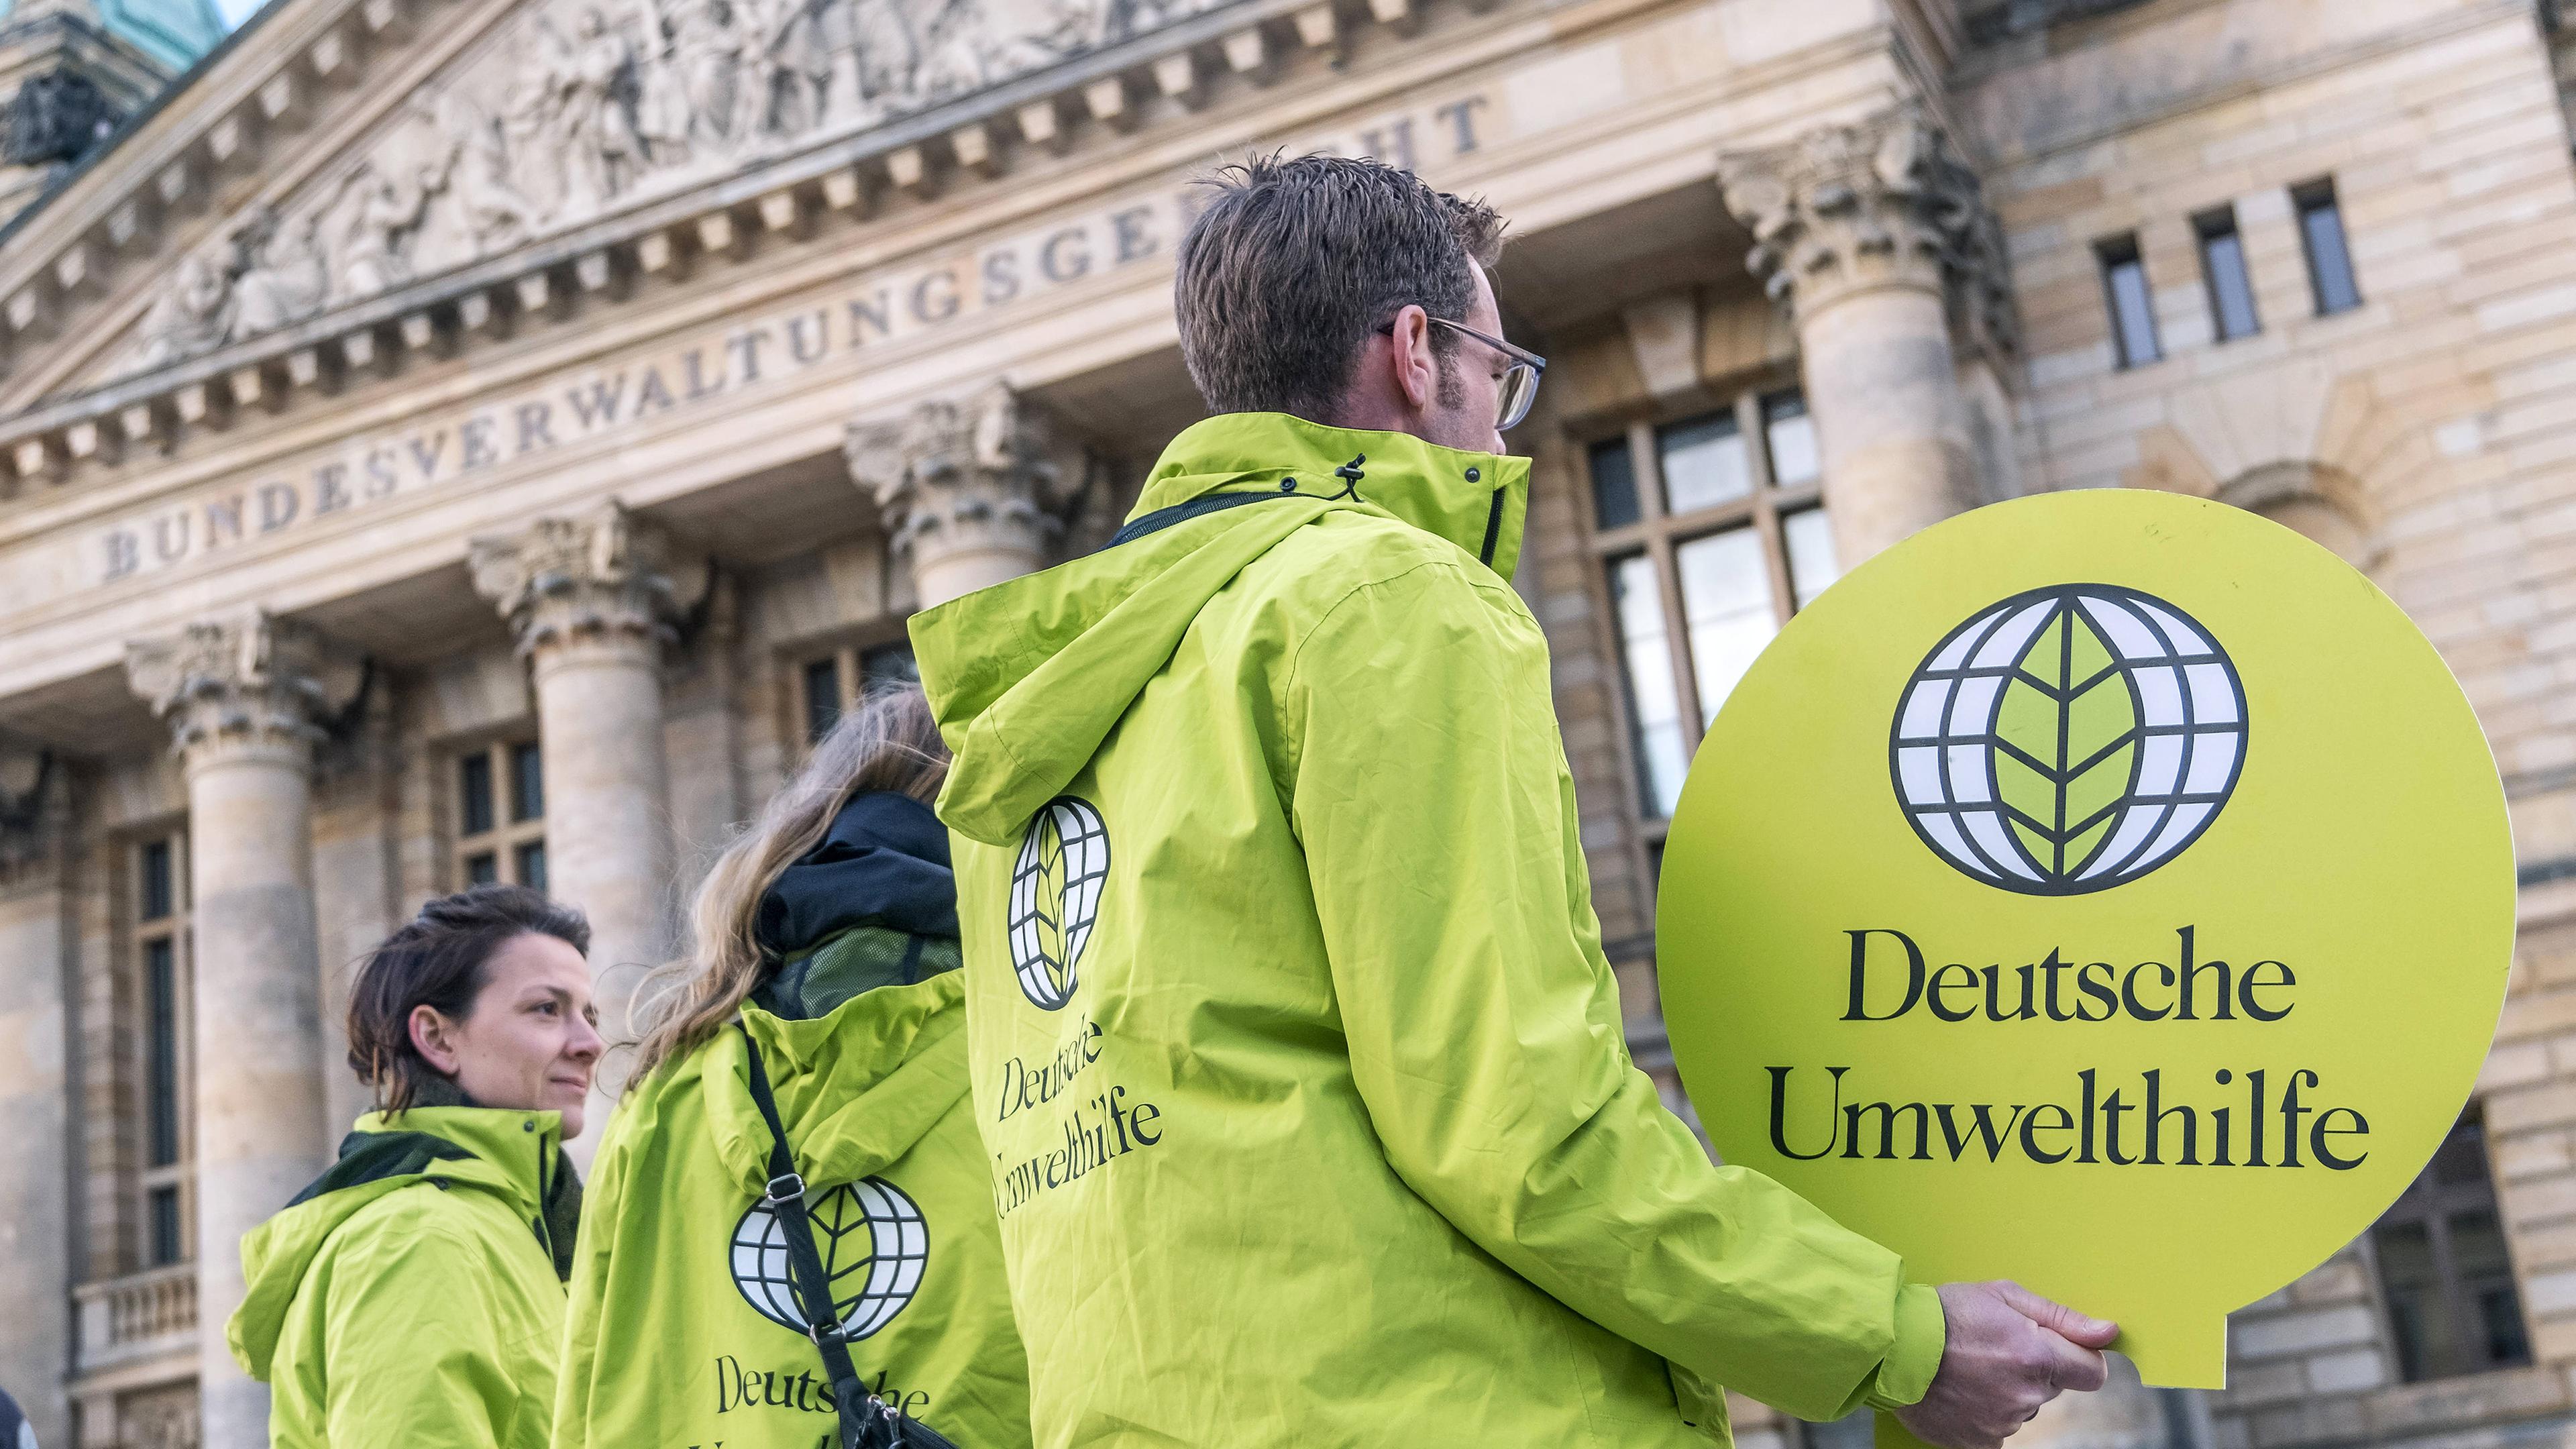 Archiv: Mitglider der DUH (Deutsche Umwelthilfe) stehen vor dem Gebäude des Bundesverwaltungsgerichts